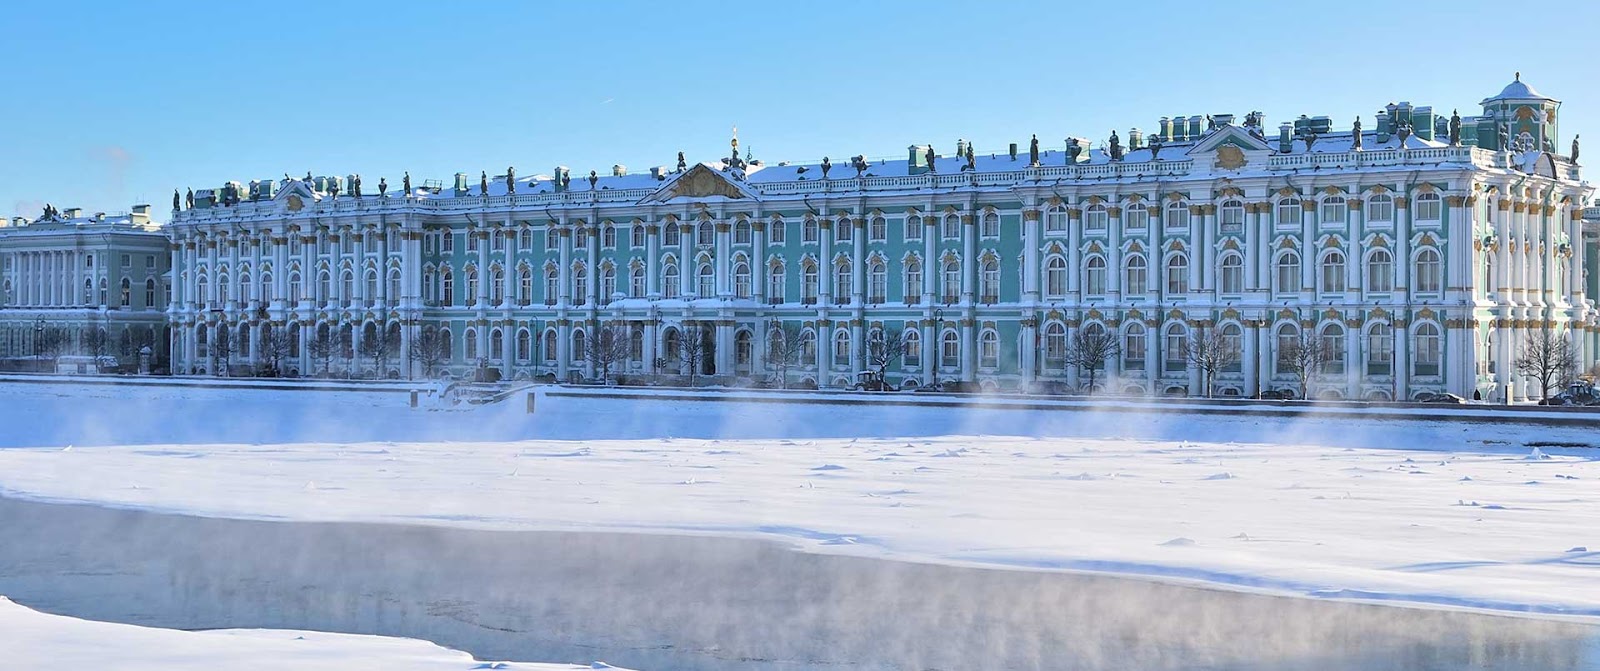 Летний дворец Екатерины в Санкт-Петербурге зимой